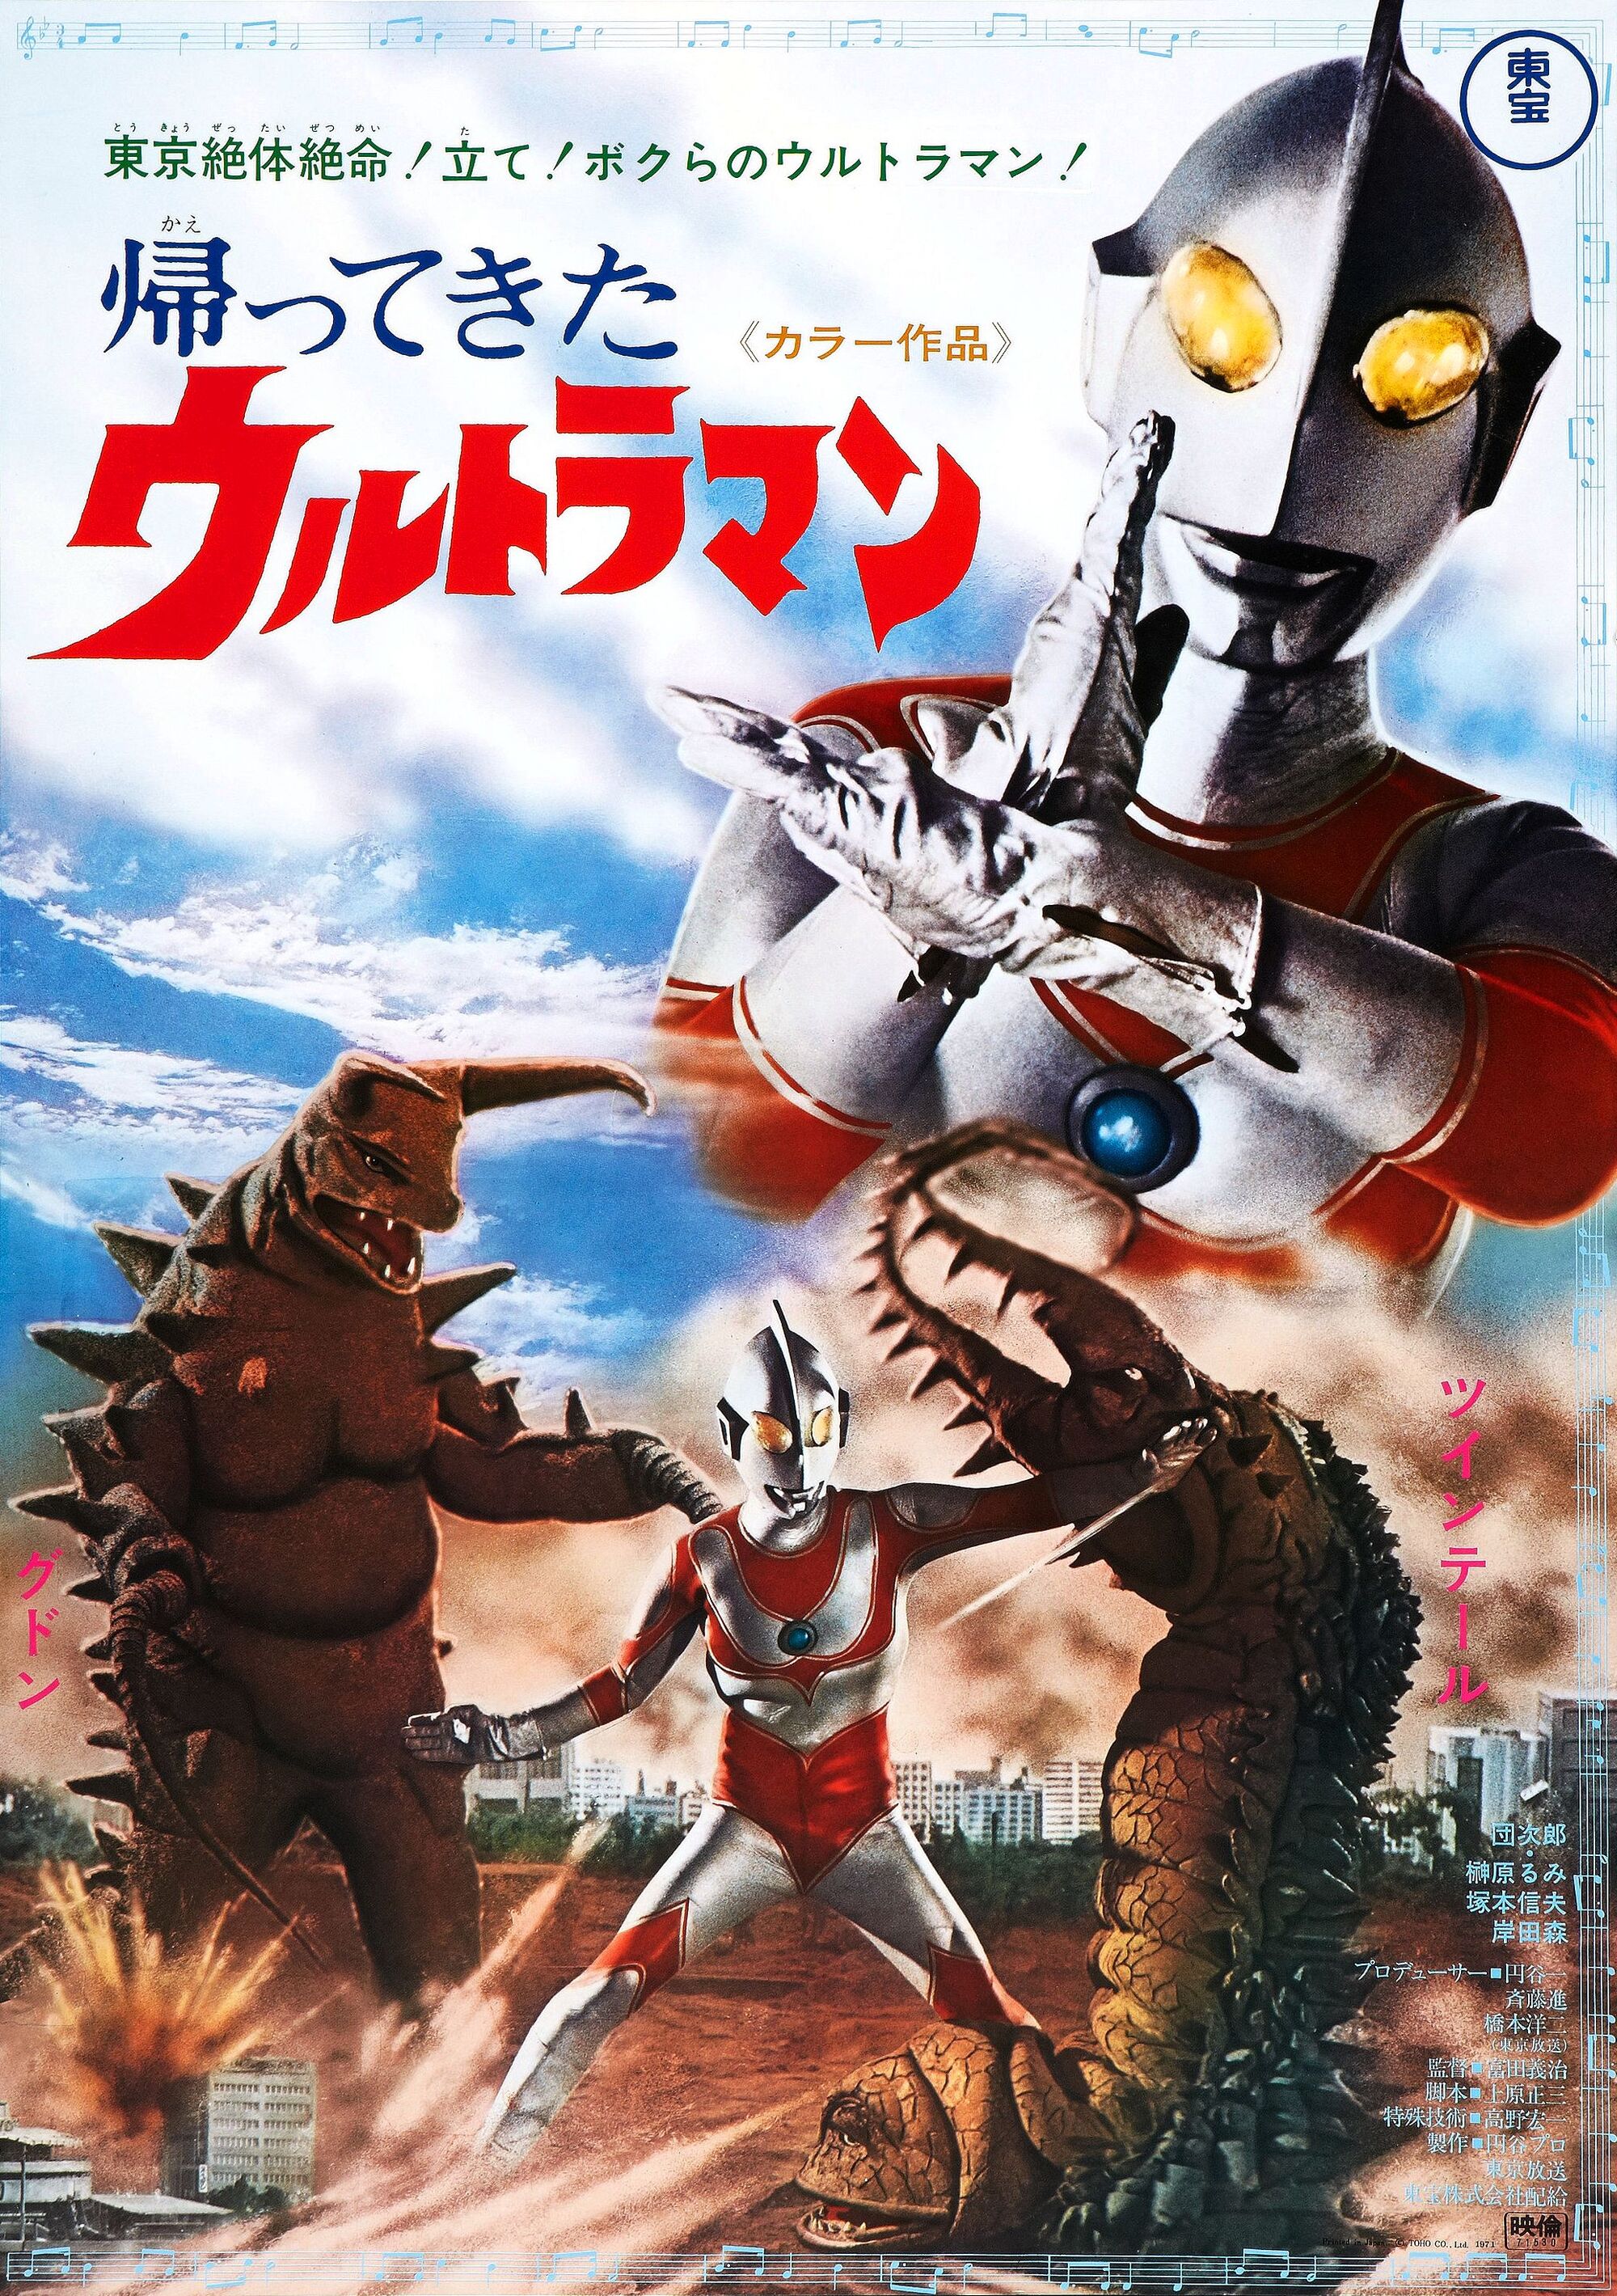 Return of Ultraman (film) | Ultraman Wiki | FANDOM powered by Wikia